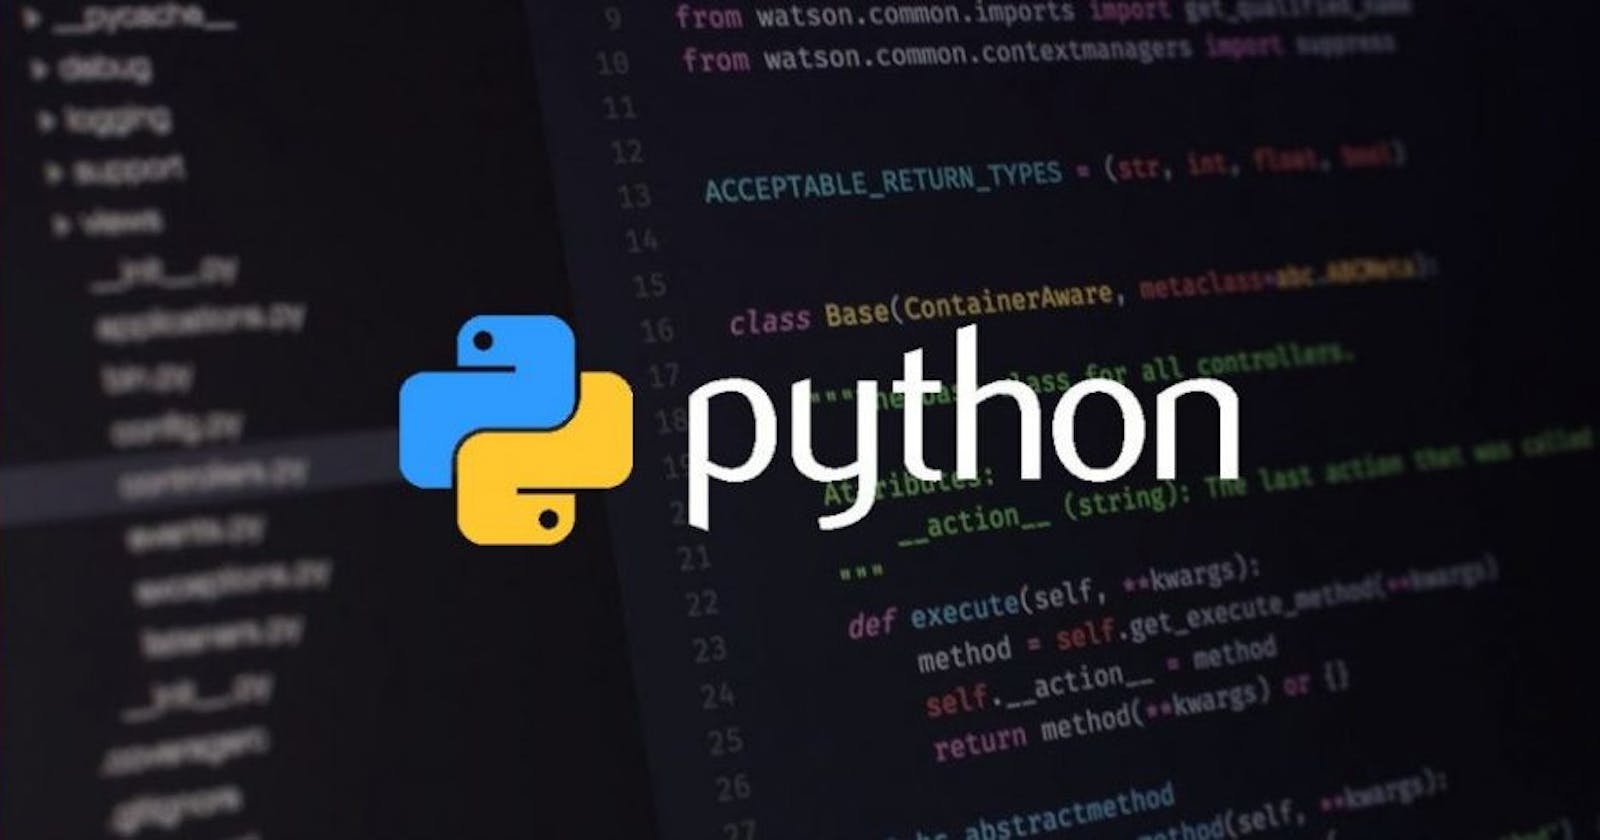 Voici quelques exemples d'utilisation de Python